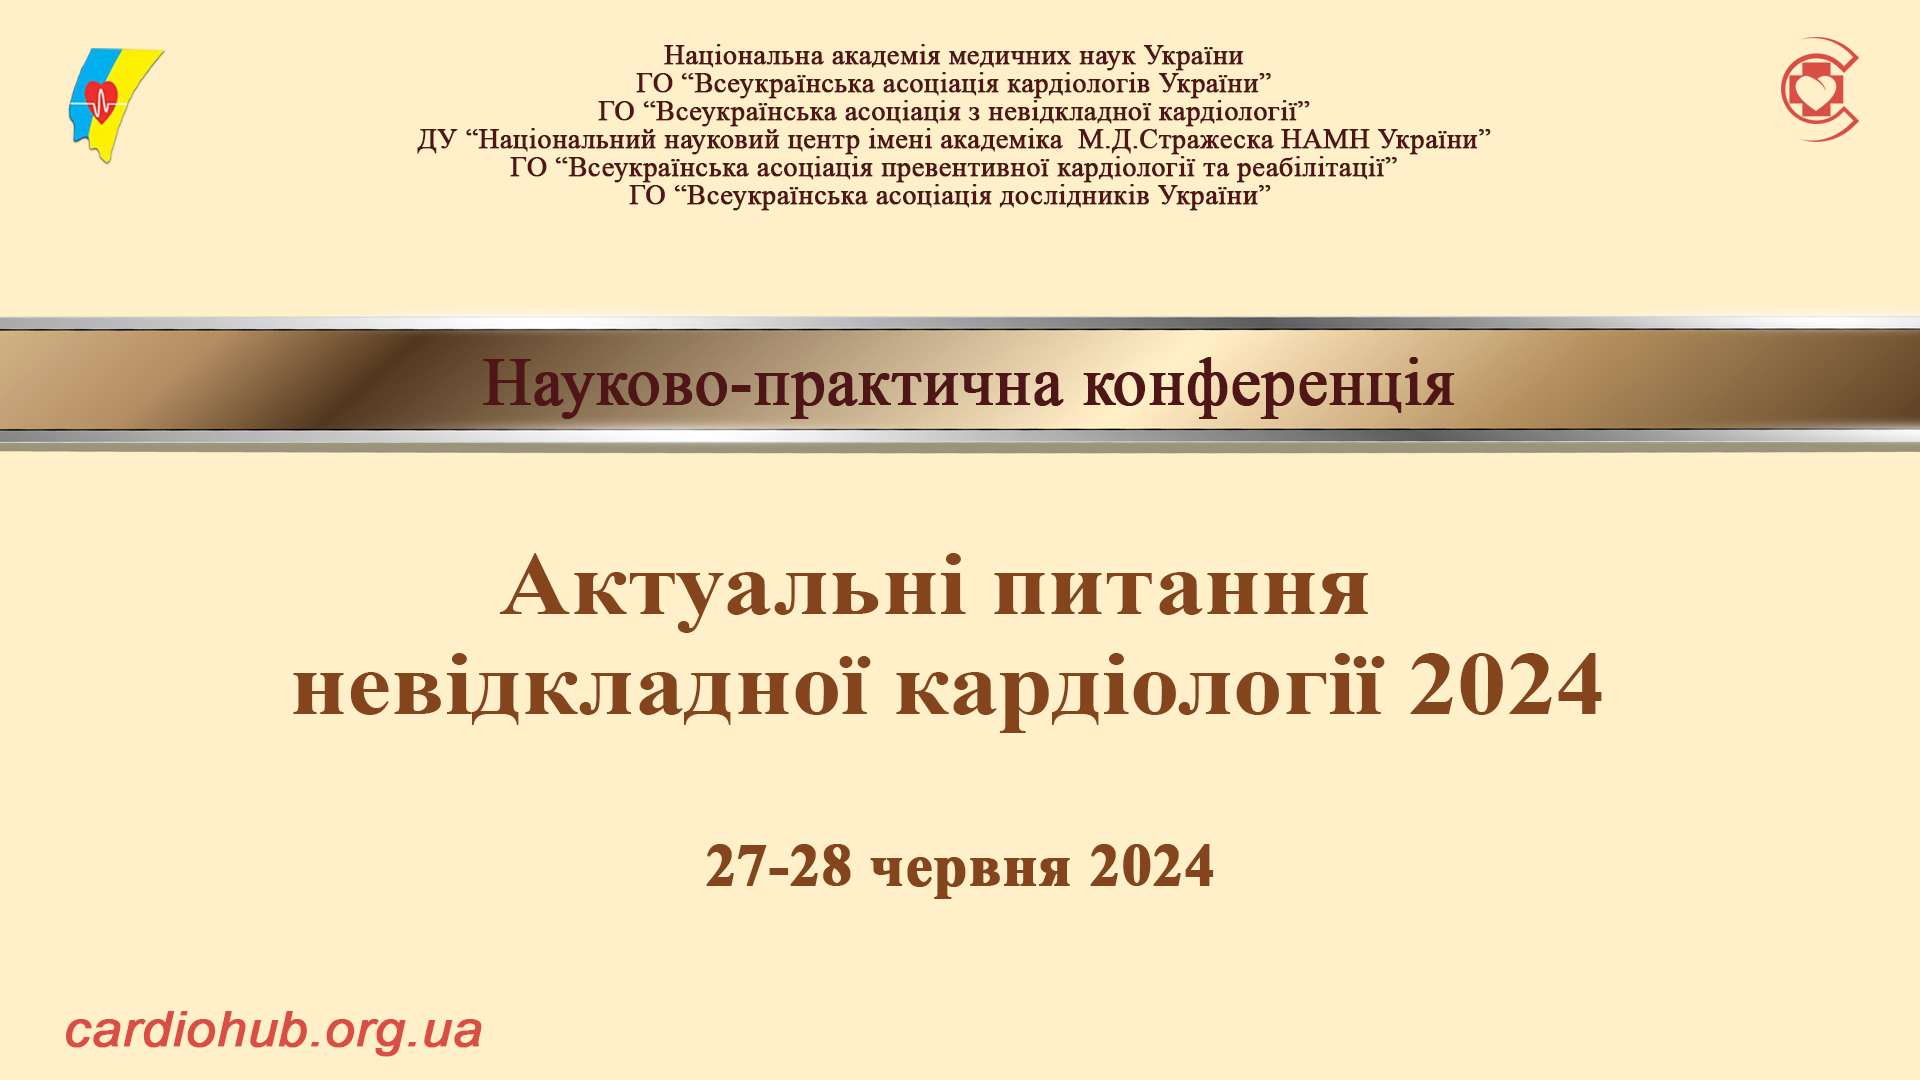 27-28.06.2024 : Науково-практична конференція: Актуальні питання невідкладної кардіології